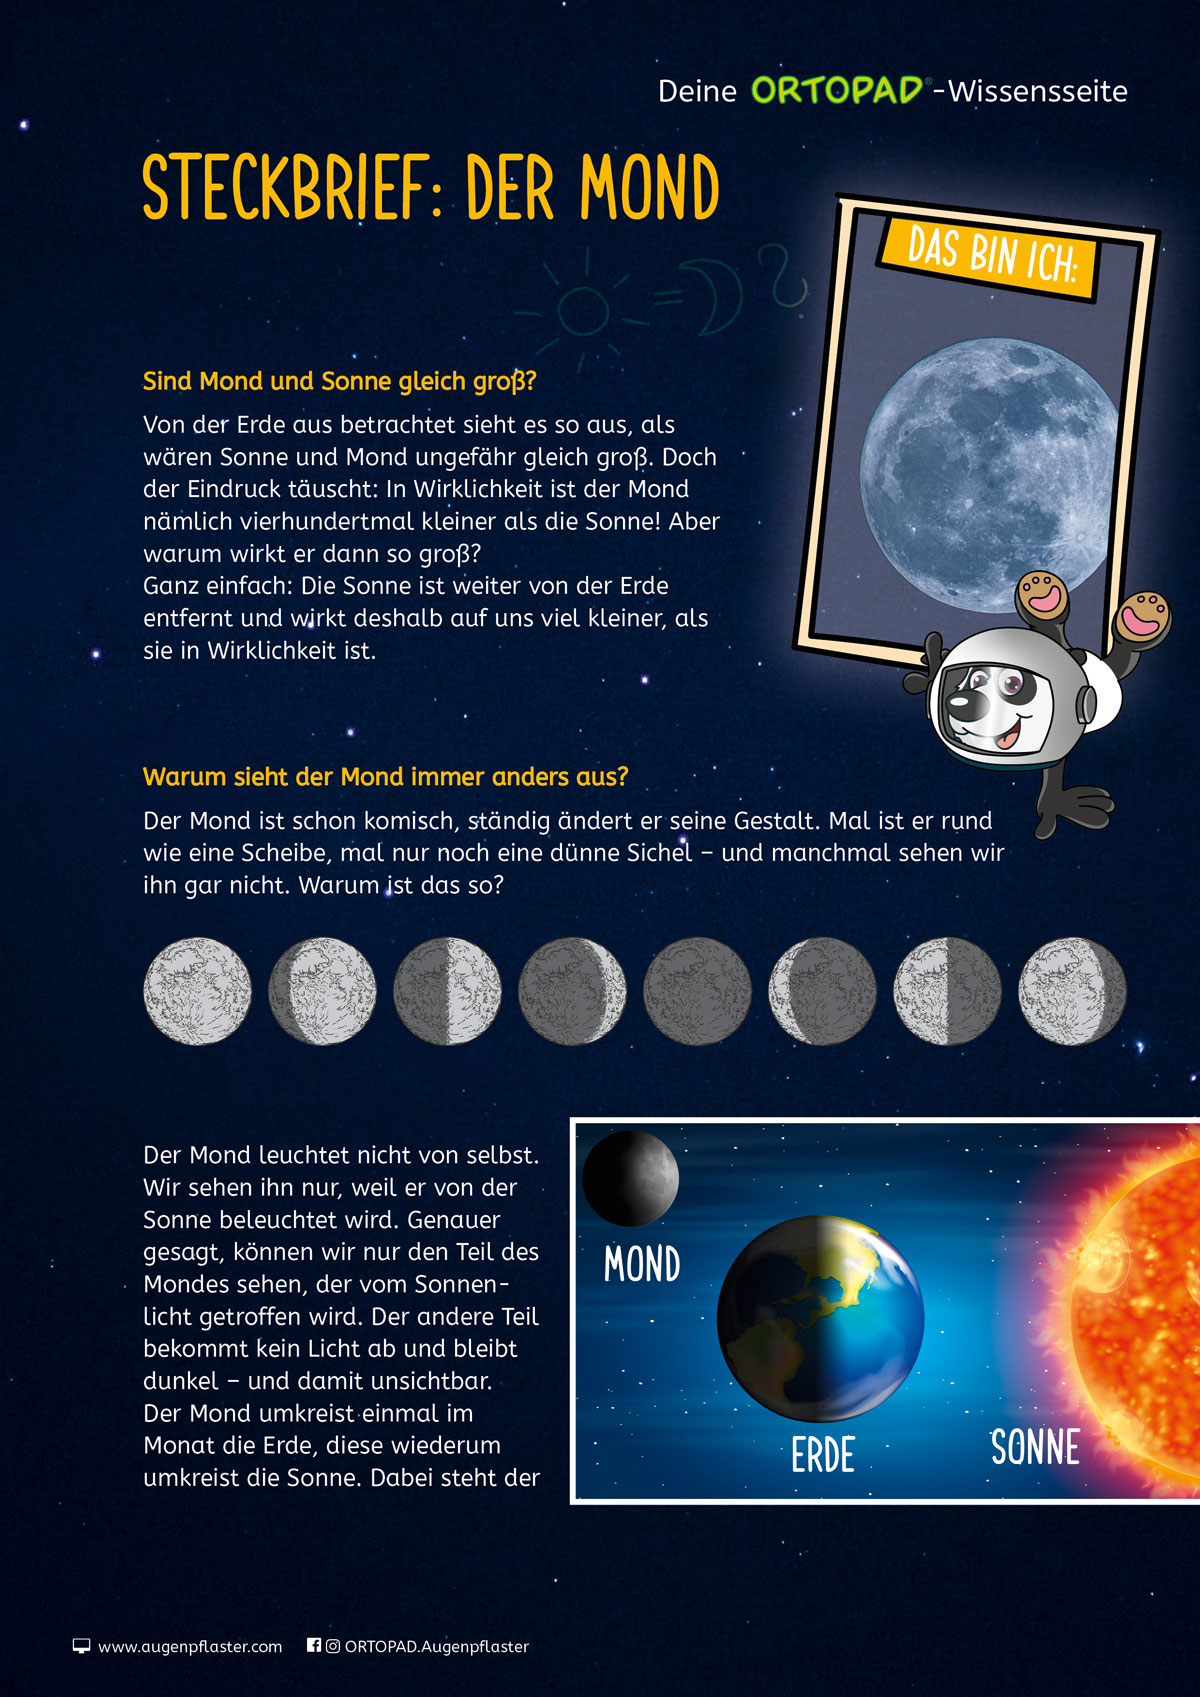 Vorschaubild der Wissenseite zum Thema "Mond" mit seinen verschiedenen Phasen und alles was man darüber wissen sollte